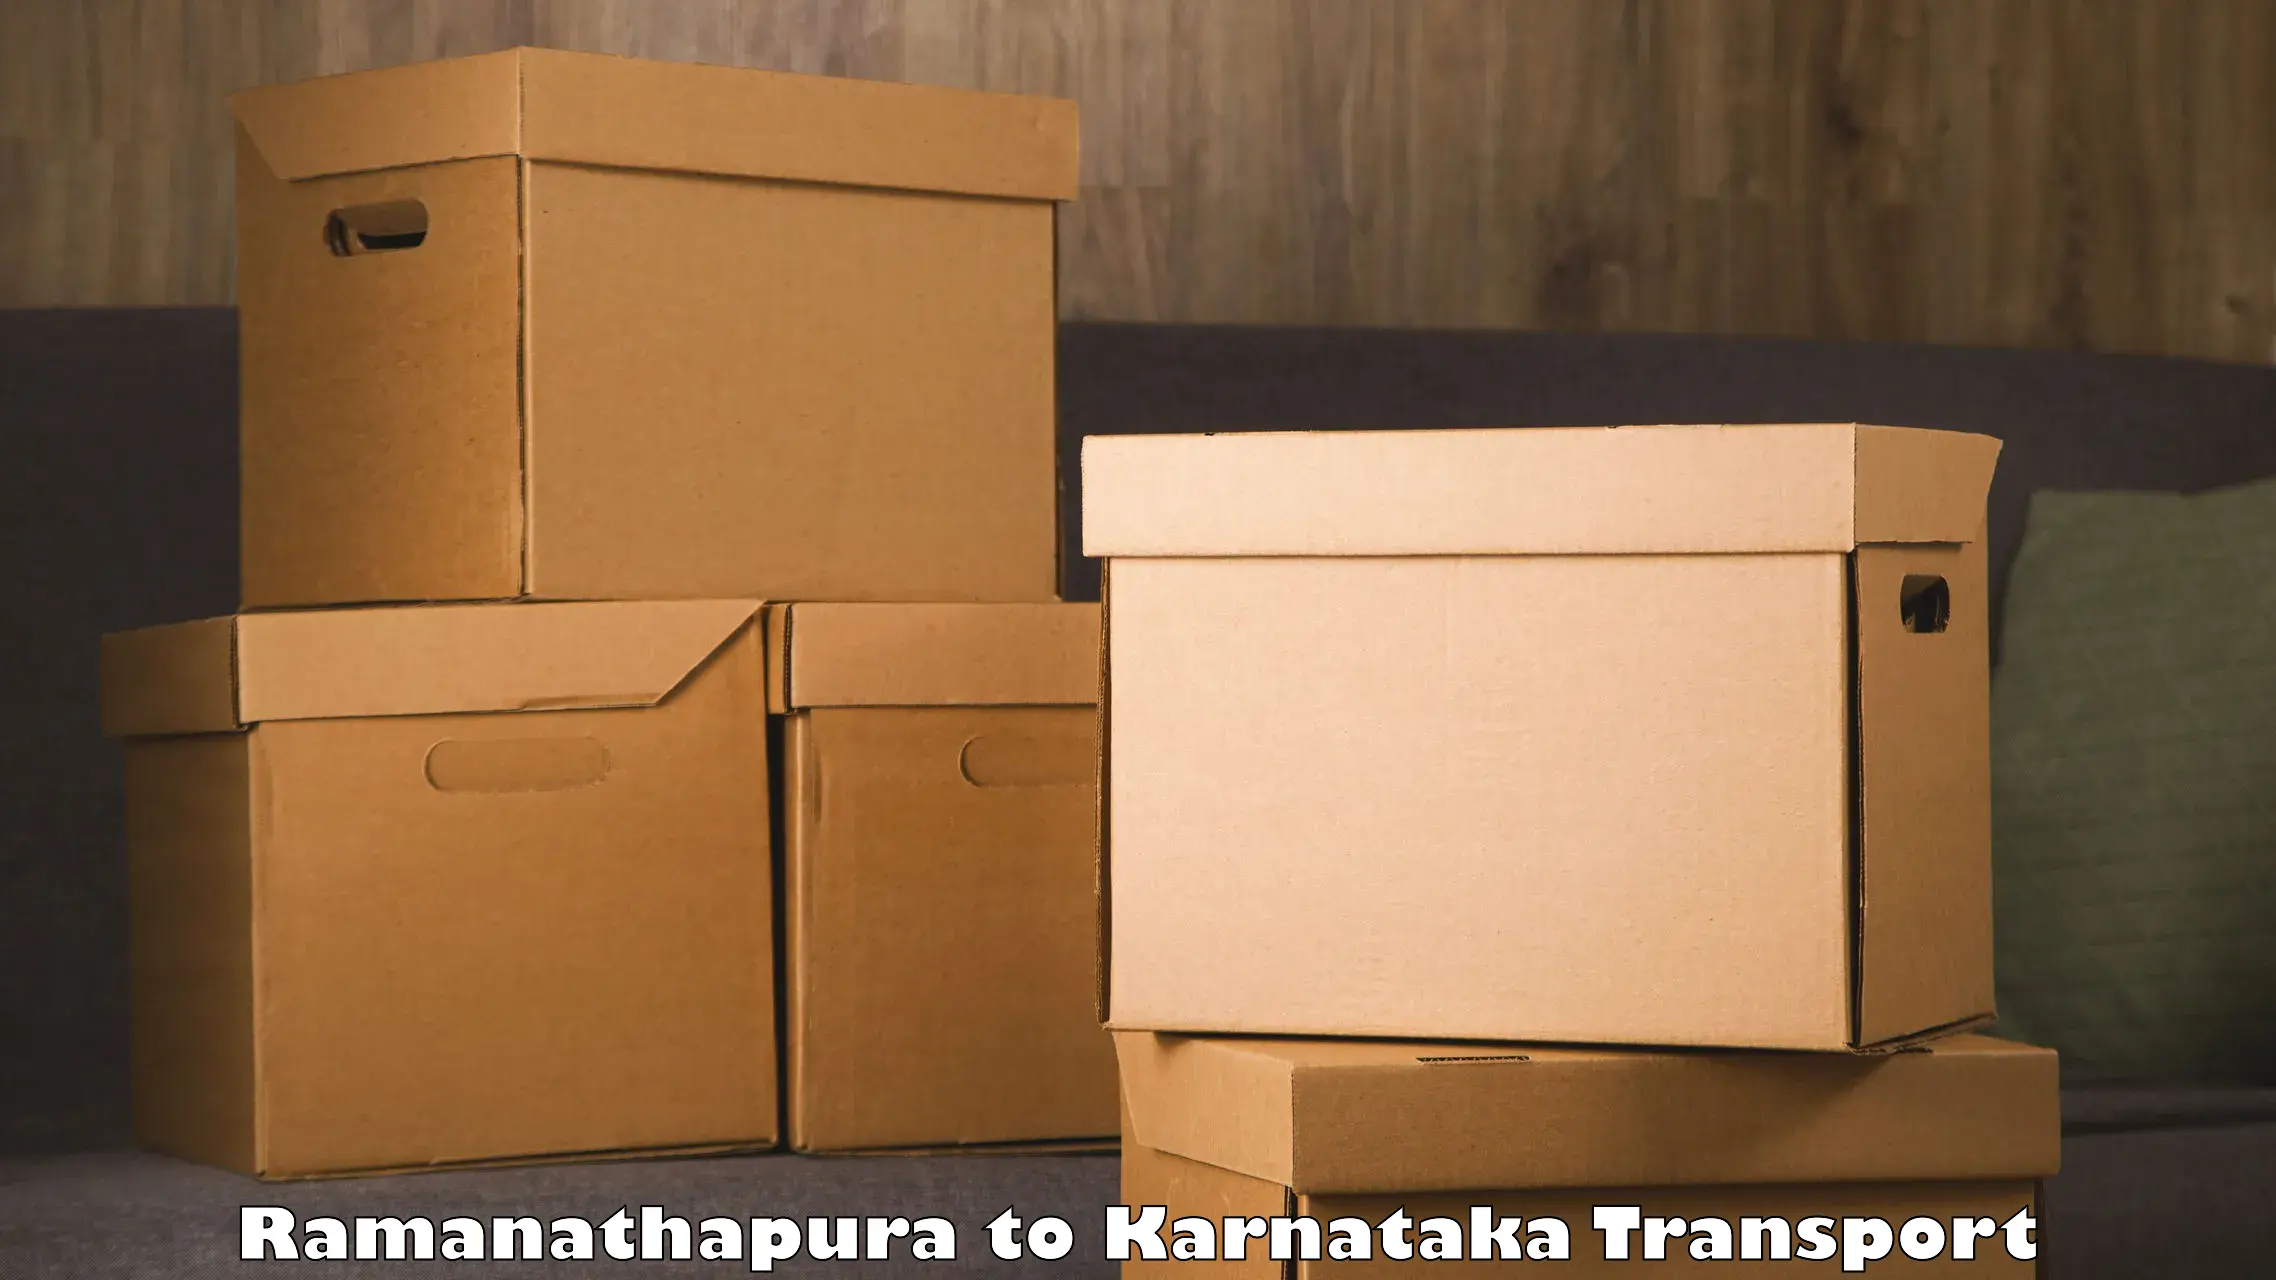 Material transport services Ramanathapura to Karnataka